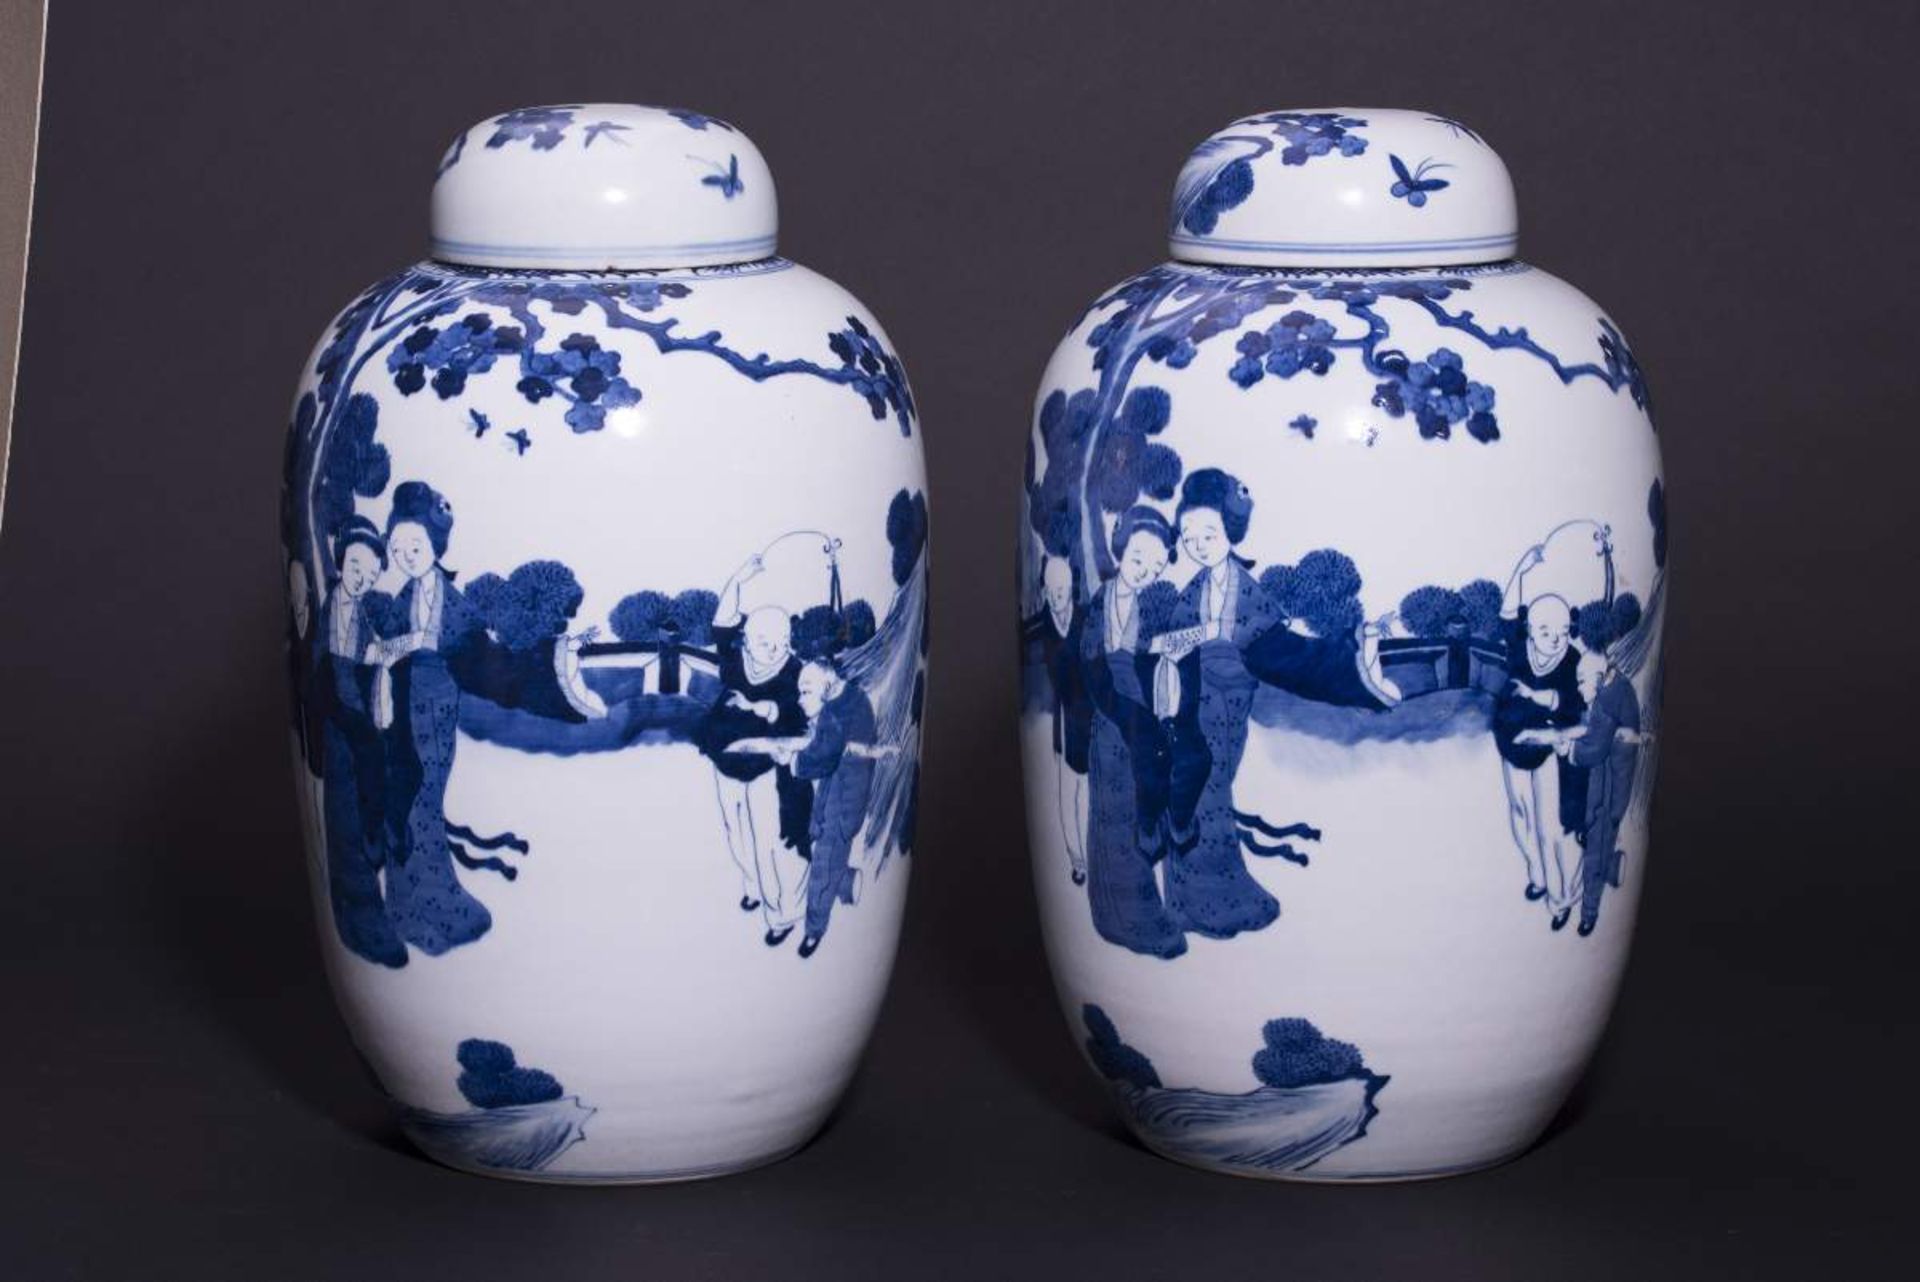 PAAR DECKELVASEN MIT GARTENSZENENBlauweißes Porzellan. China, Qing-Dynastie, 19. Jh.Mit Bodenmarke - Image 4 of 6